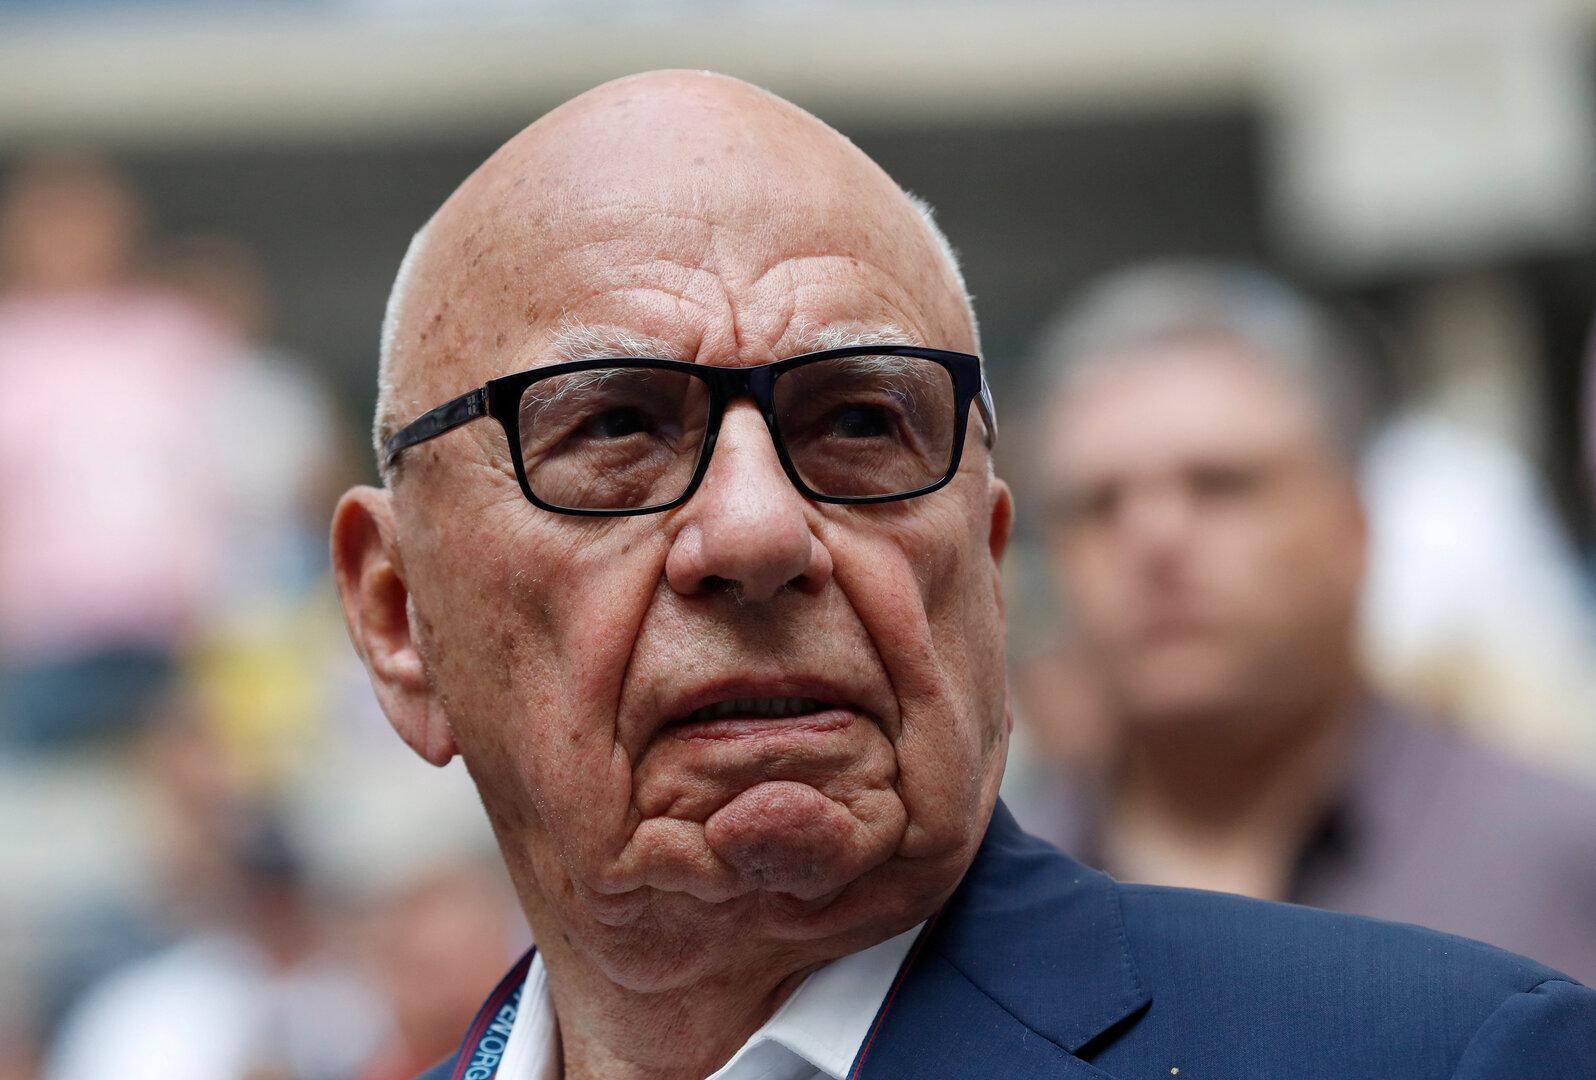 Wegen Kurs des Medienimperiums: Rupert Murdoch kämpft gegen seine Kinder